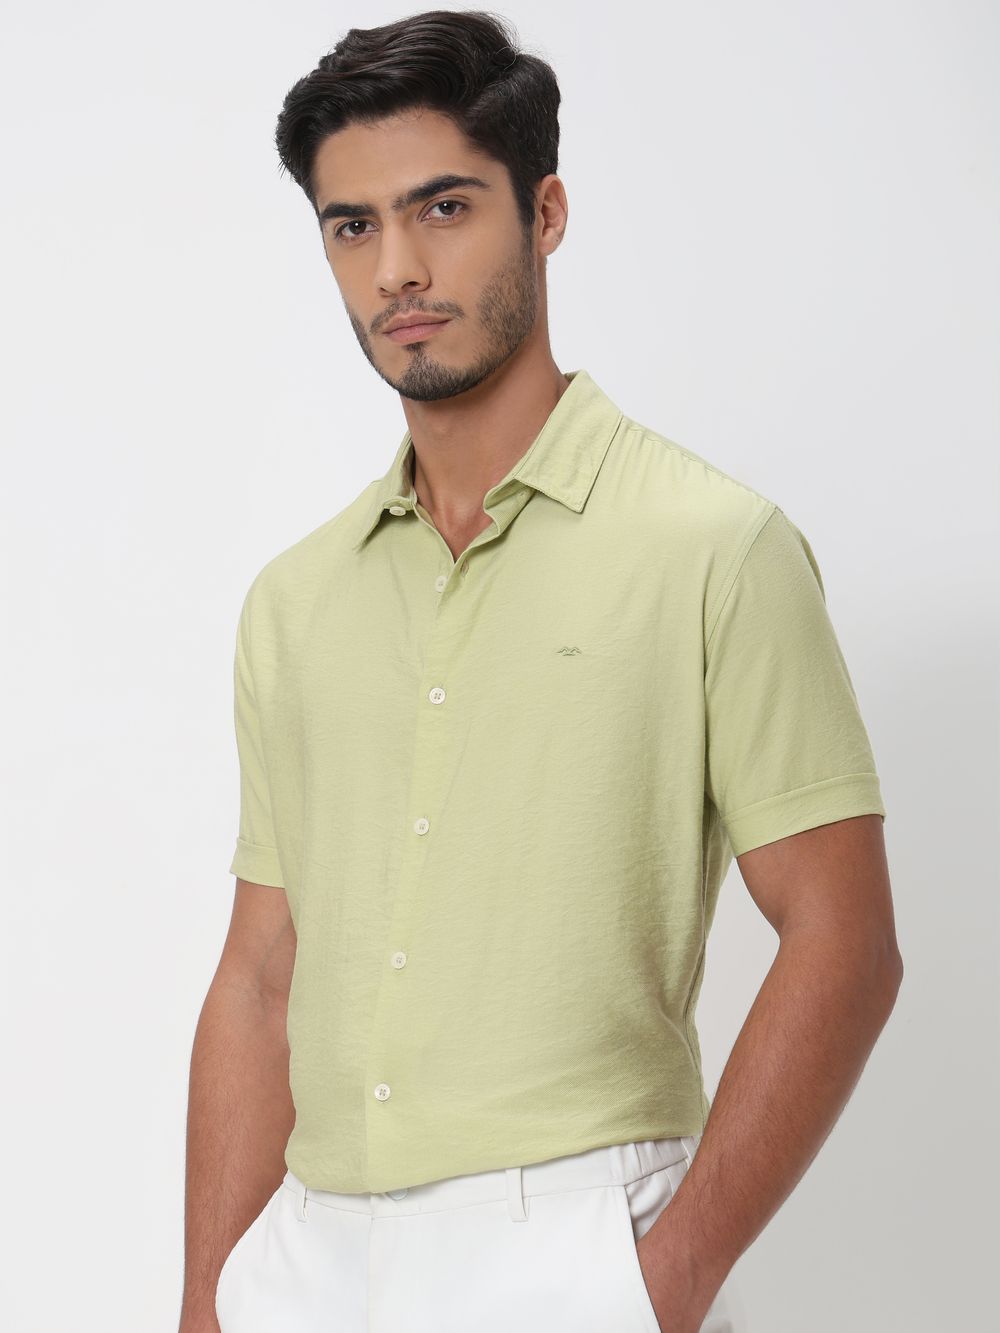 Light Green Textured Viscose Blend Plain Slim Fit Casual Shirt